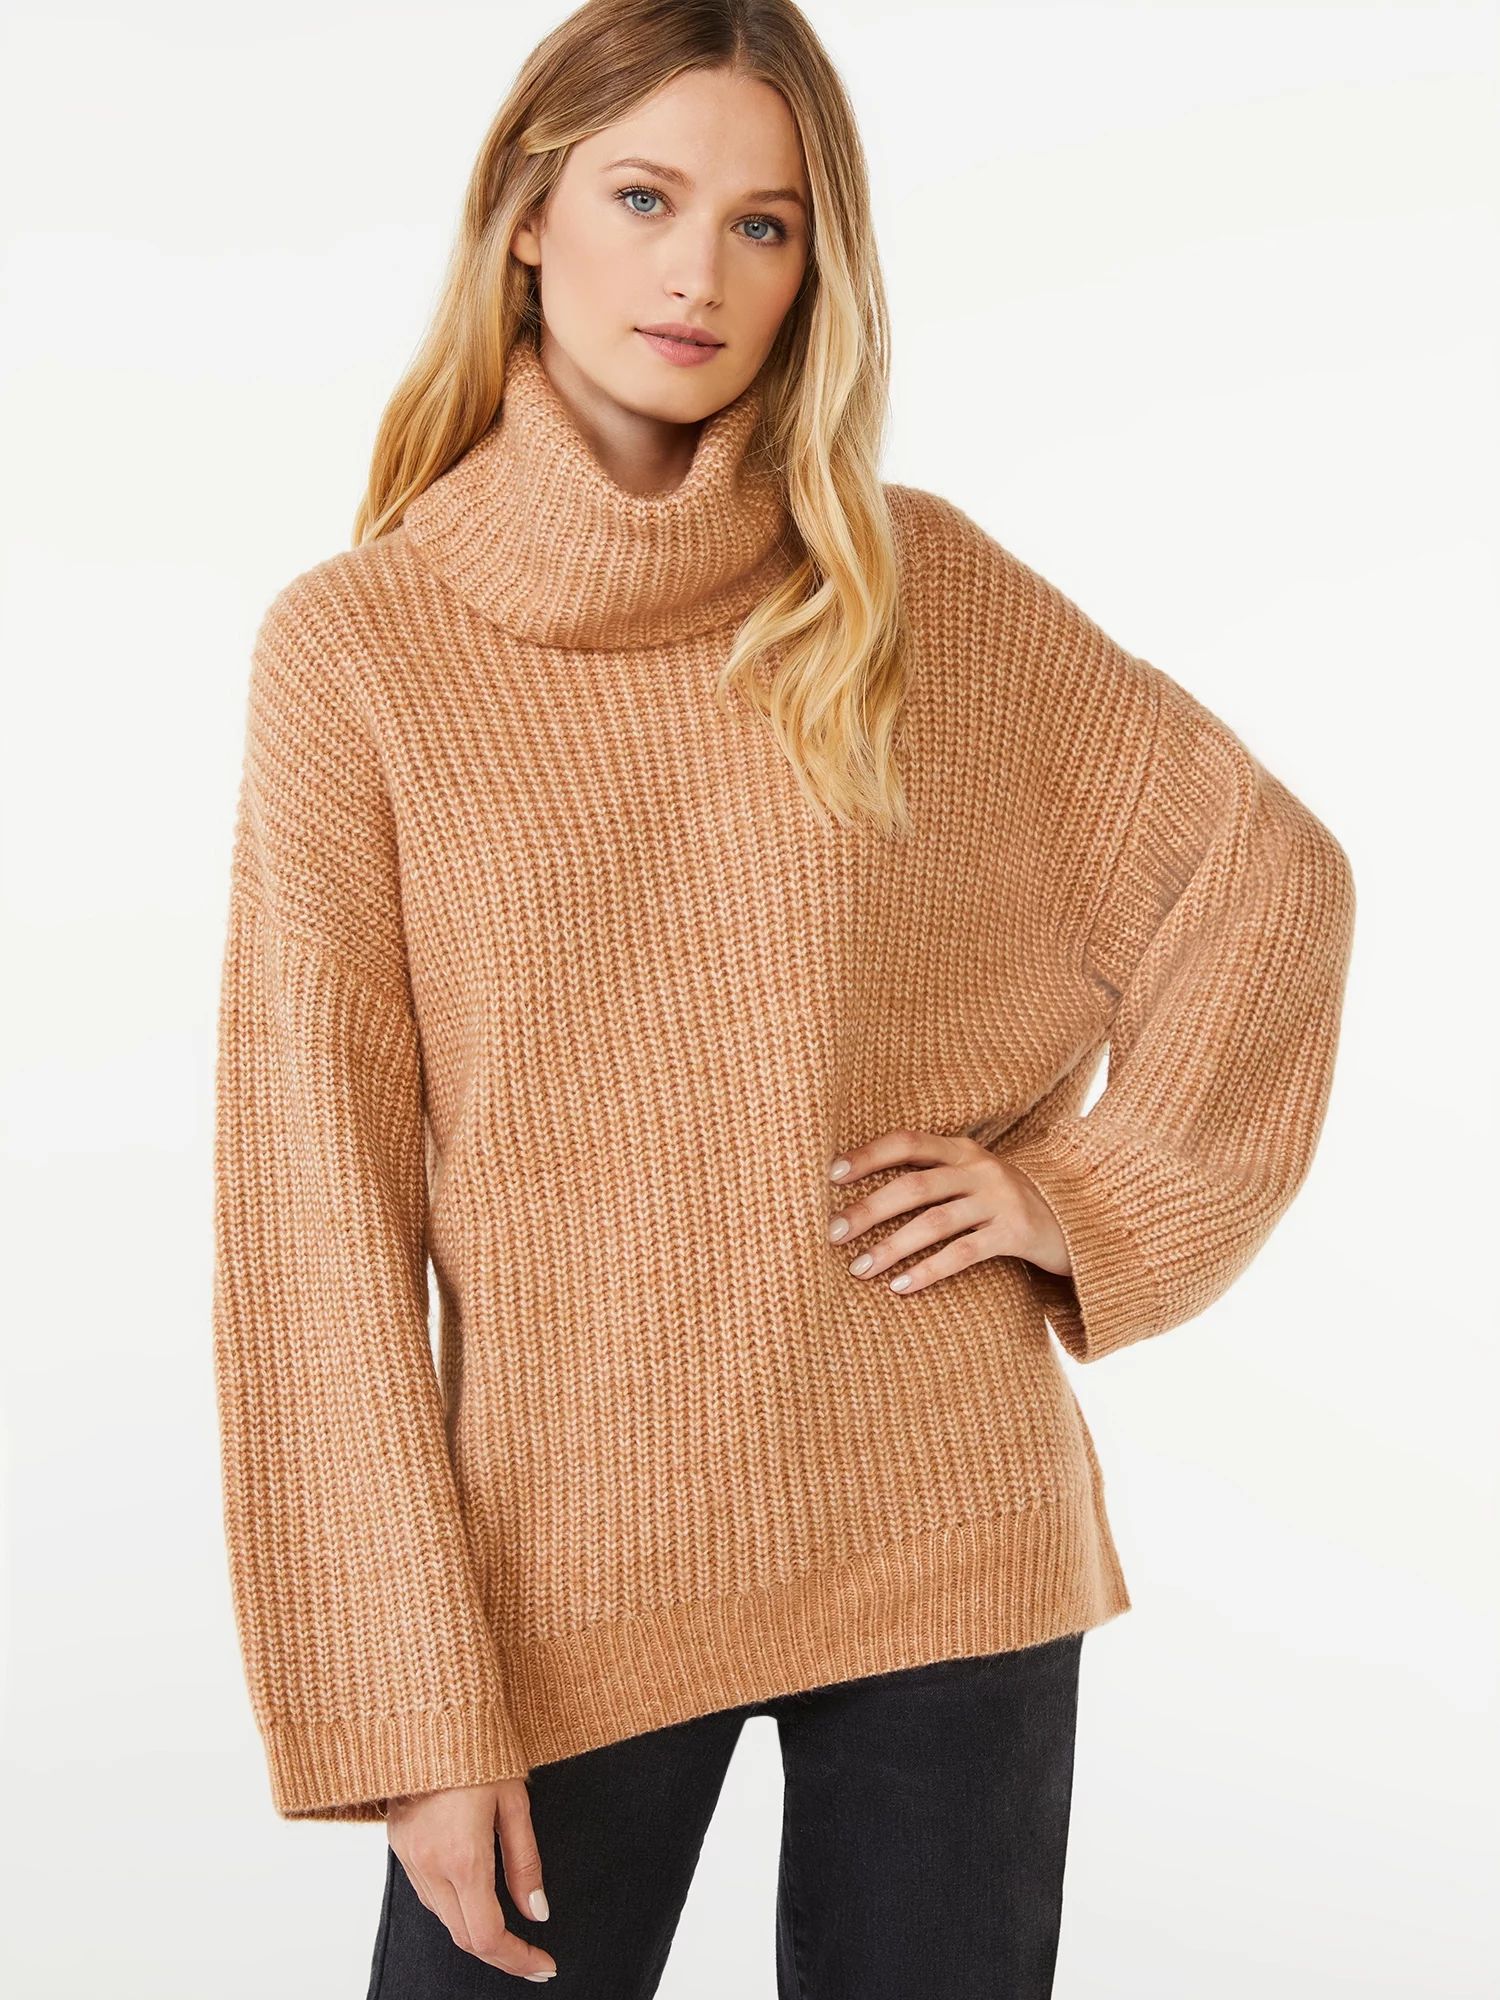 Scoop Women's Cozy Tunic Turtleneck Sweater | Walmart (US)